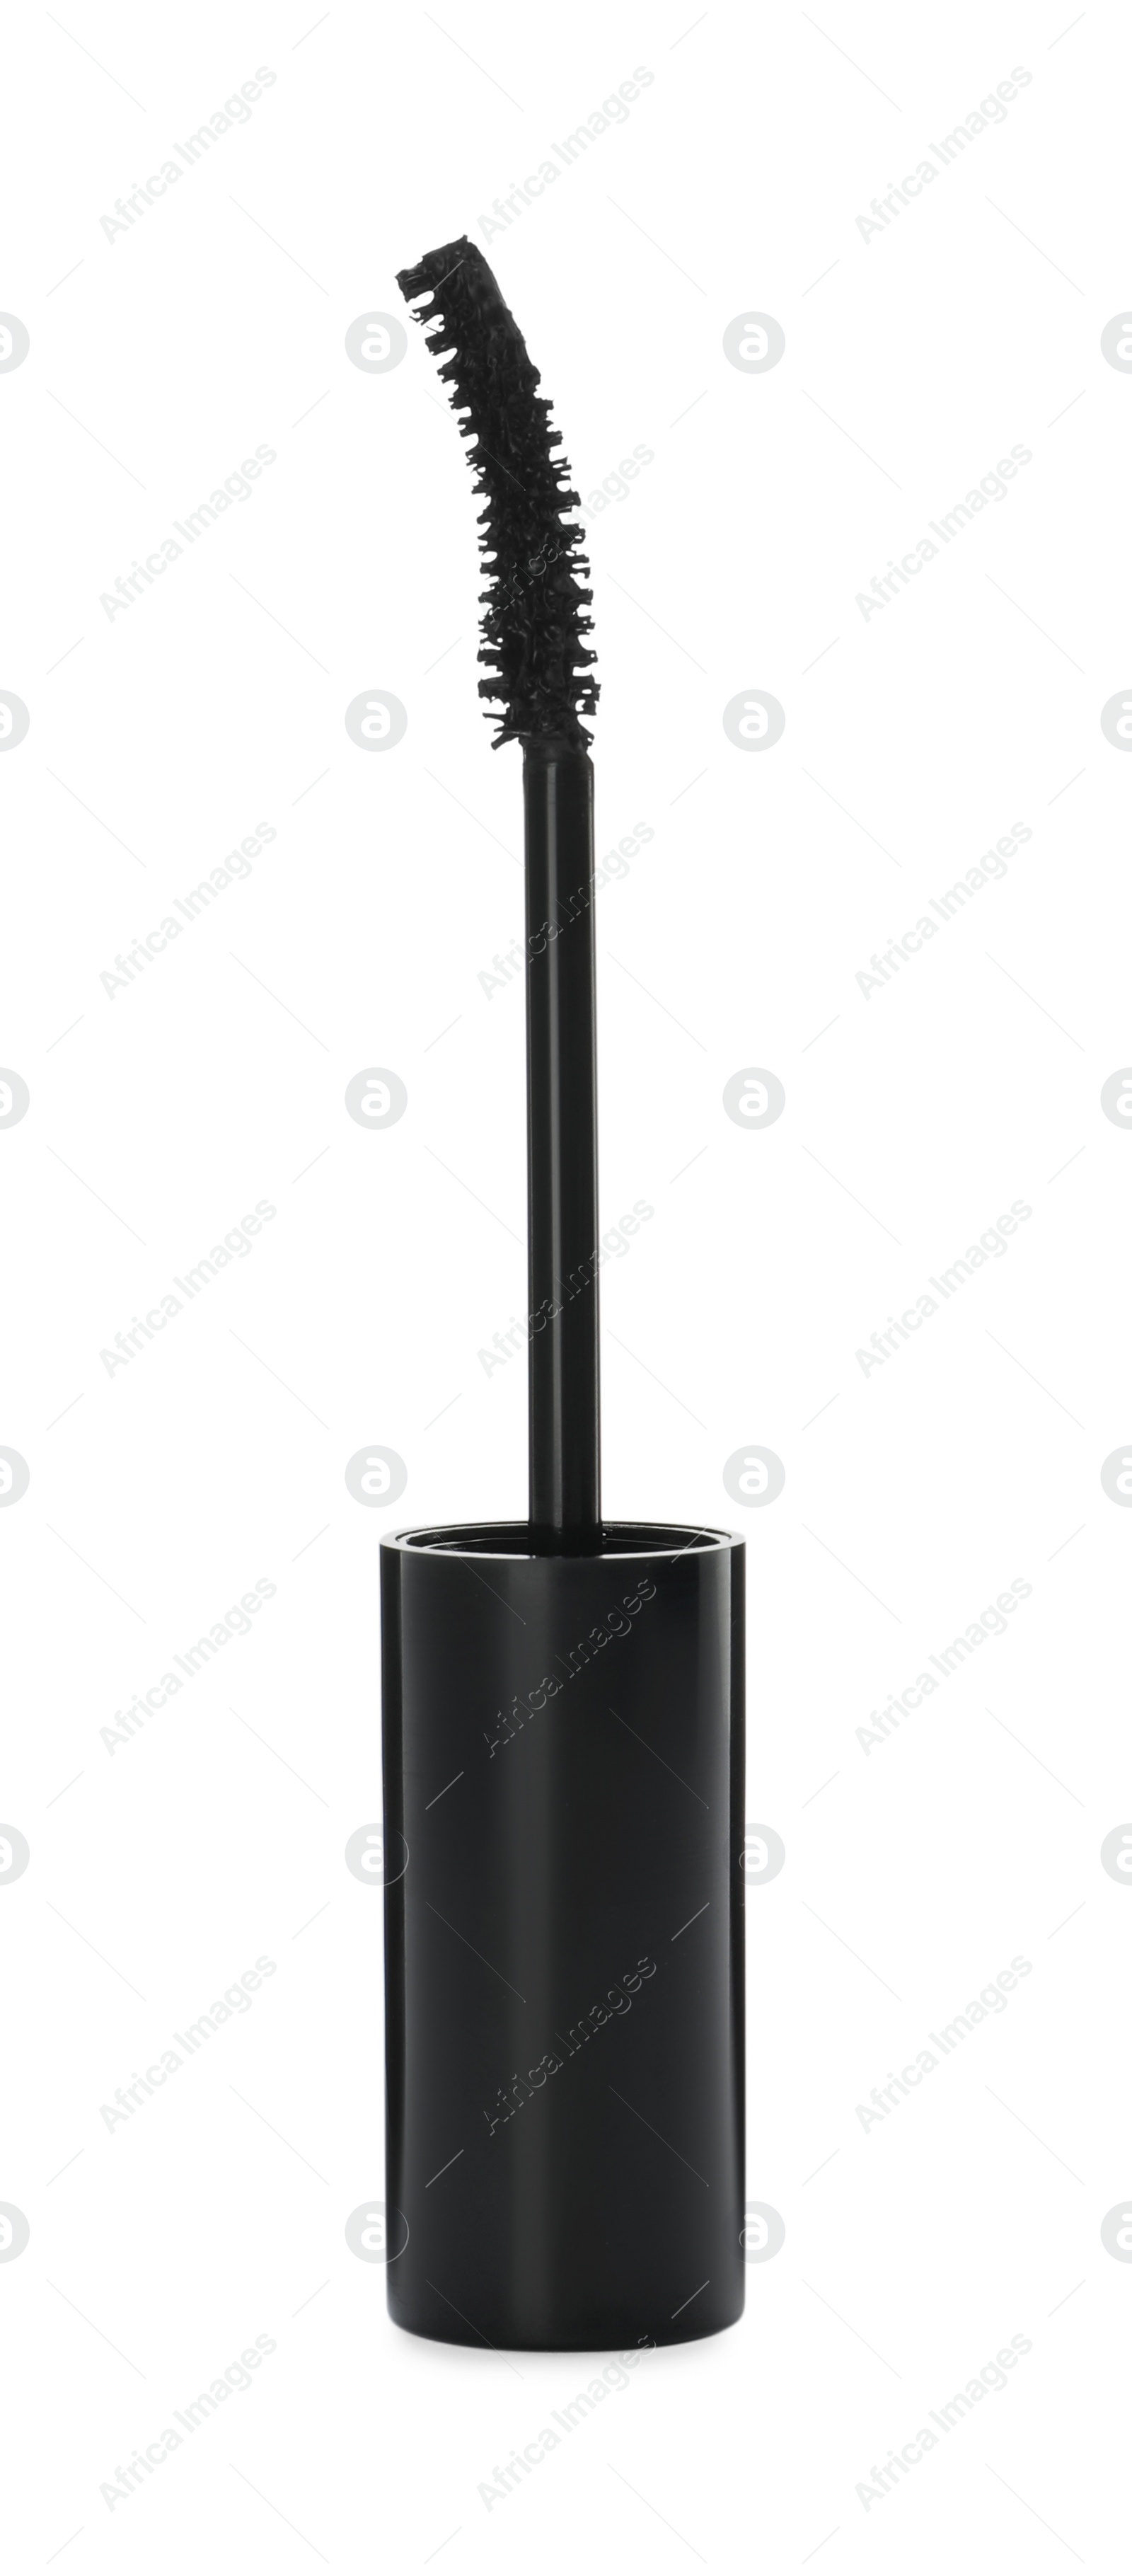 Photo of Mascara wand on white background. Makeup product